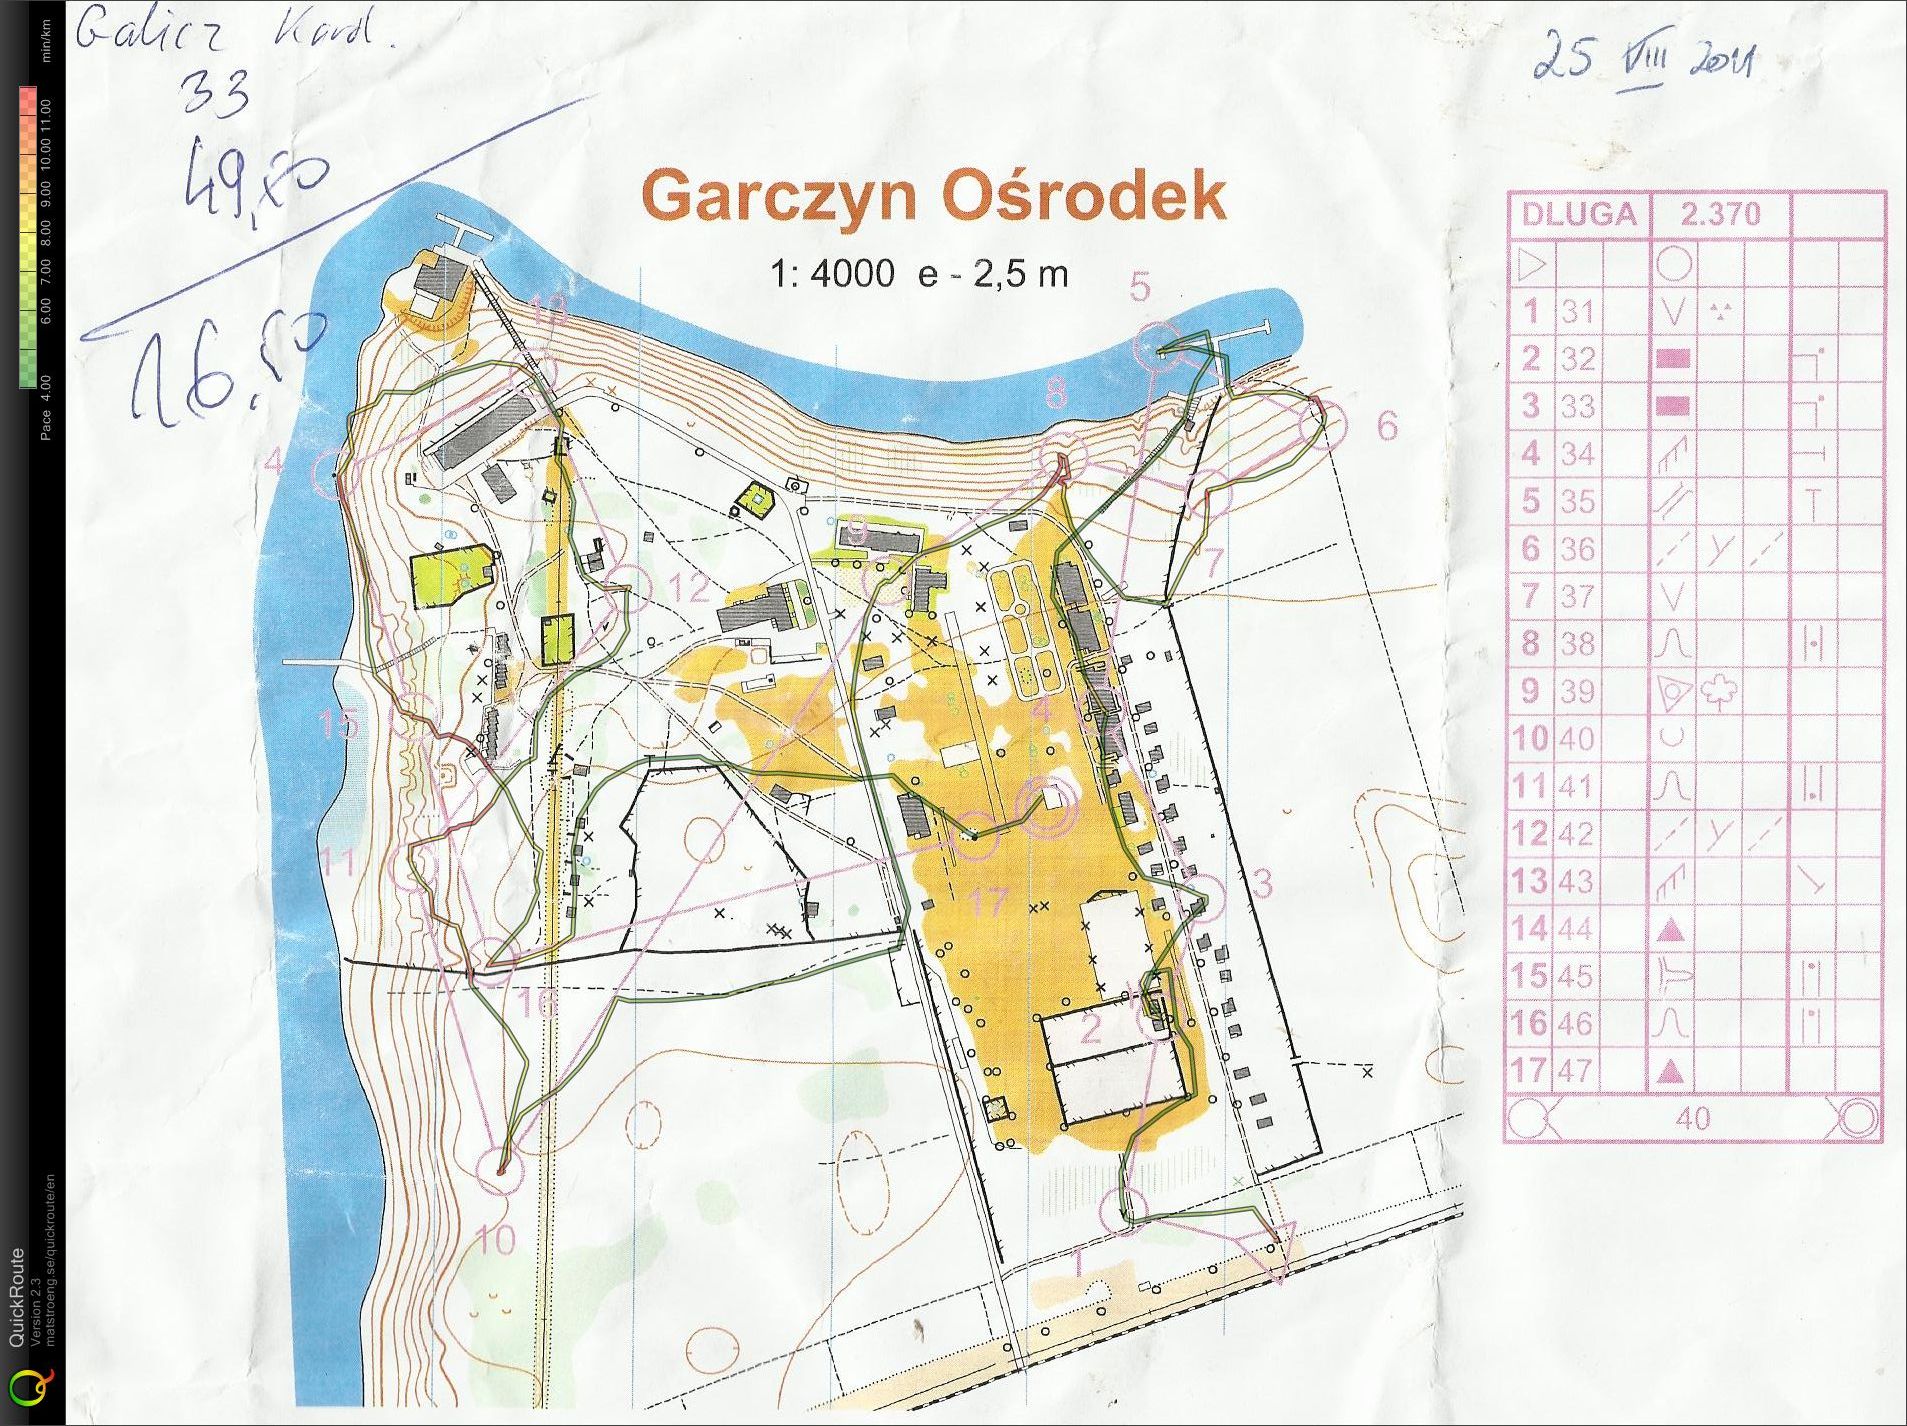 Trening - obóz Garczyn (25/08/2011)